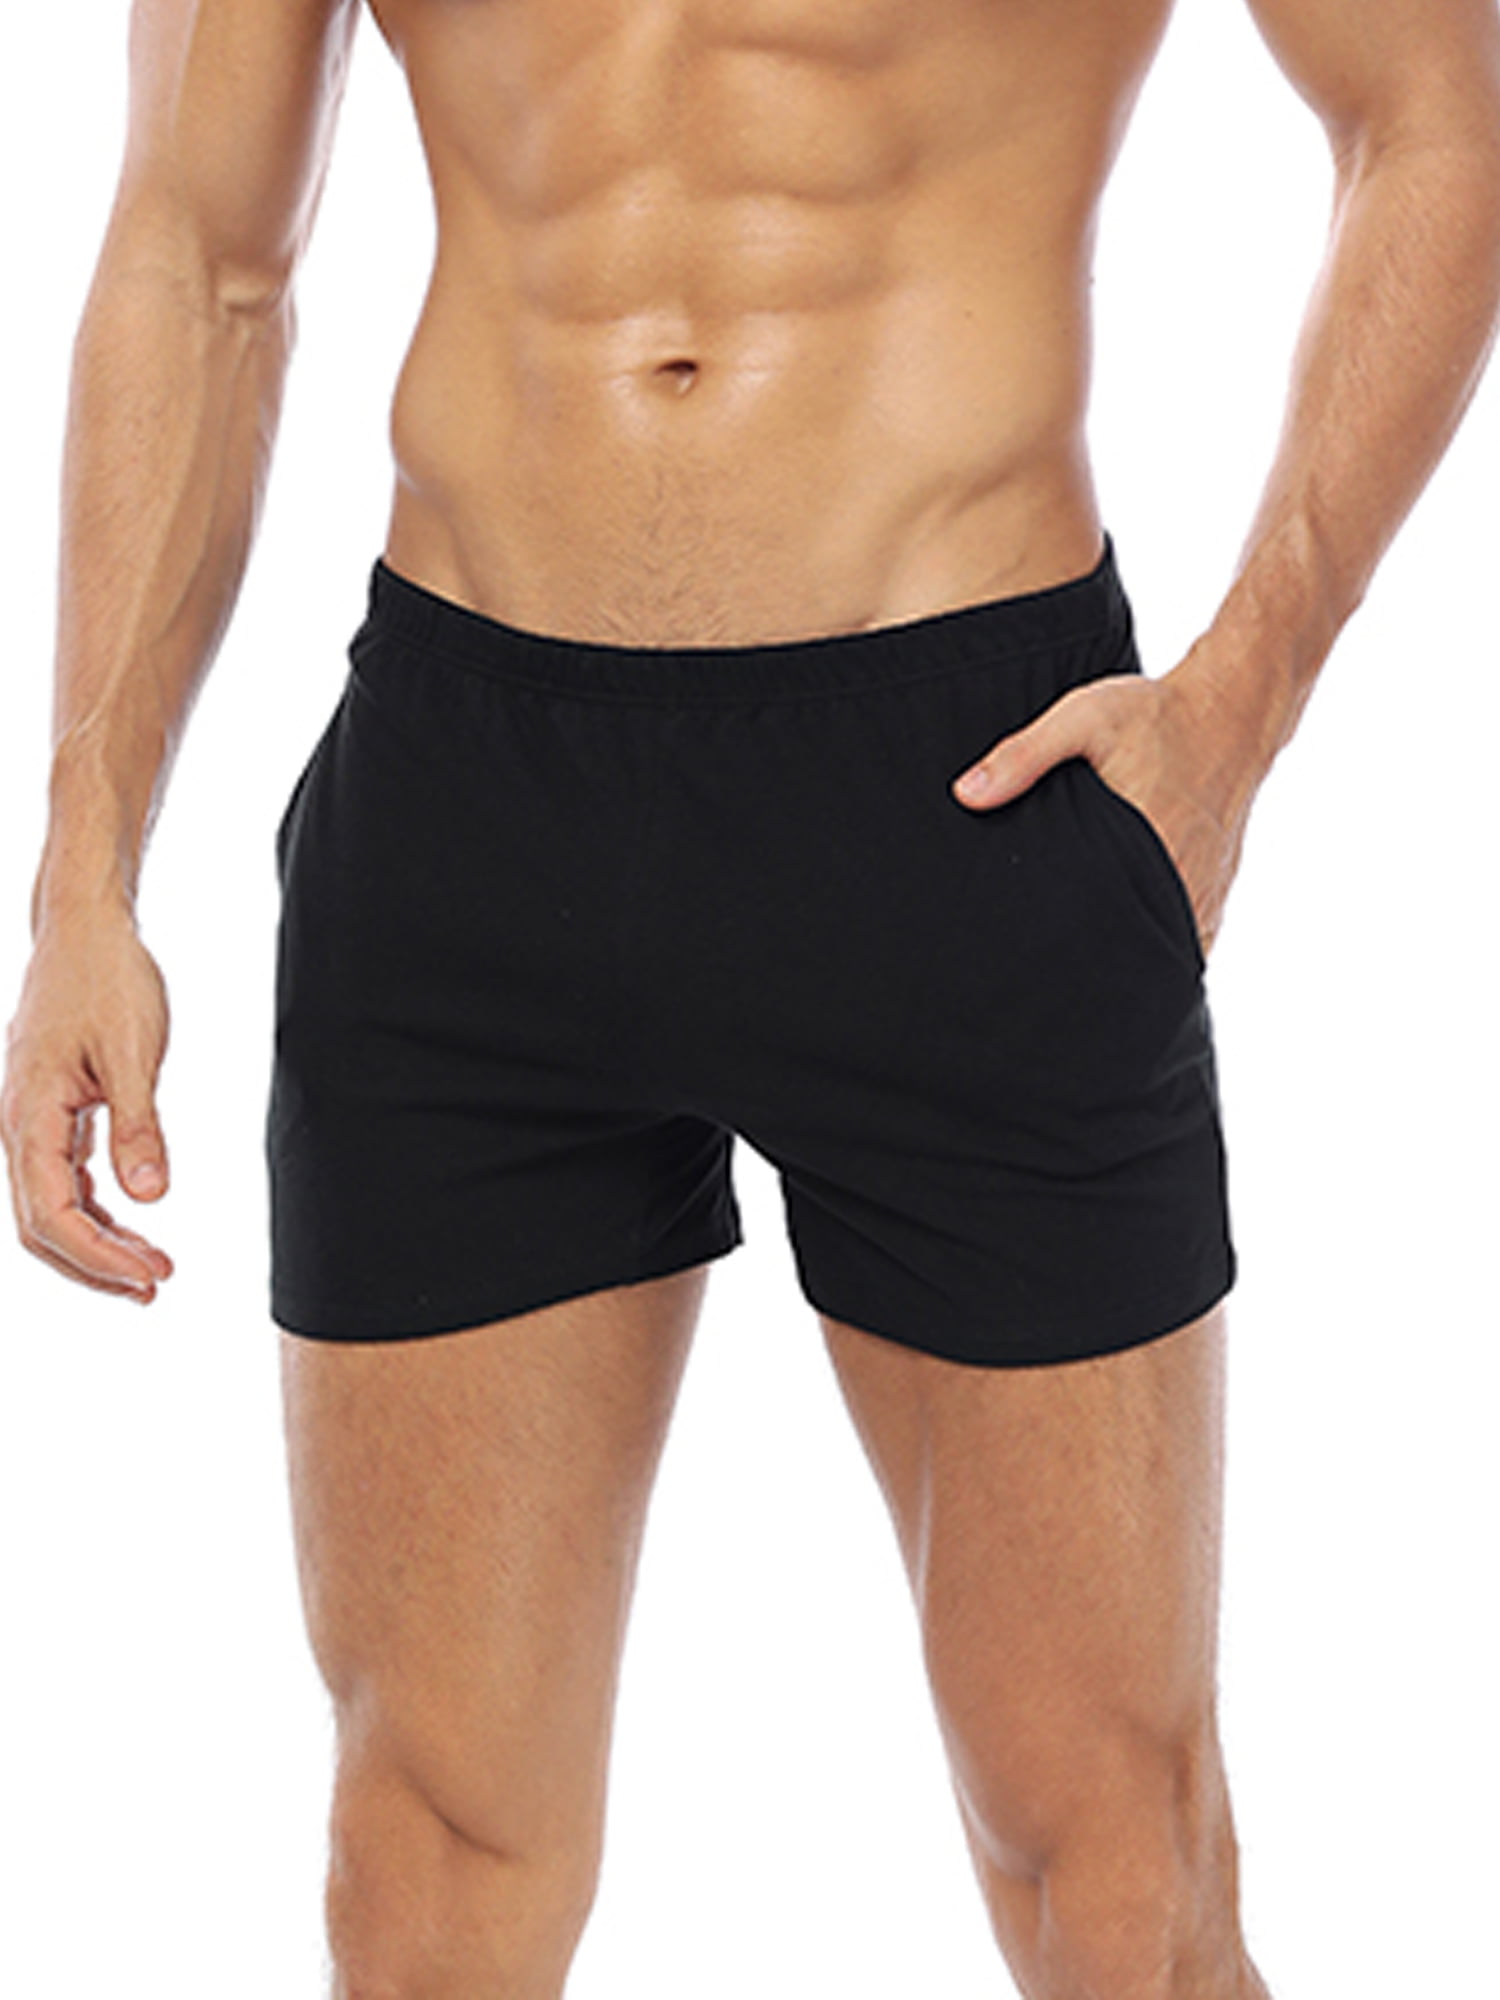 Speedo Mens Reflectwave Trim Swim Shorts Black/navy Size Medium for sale online 